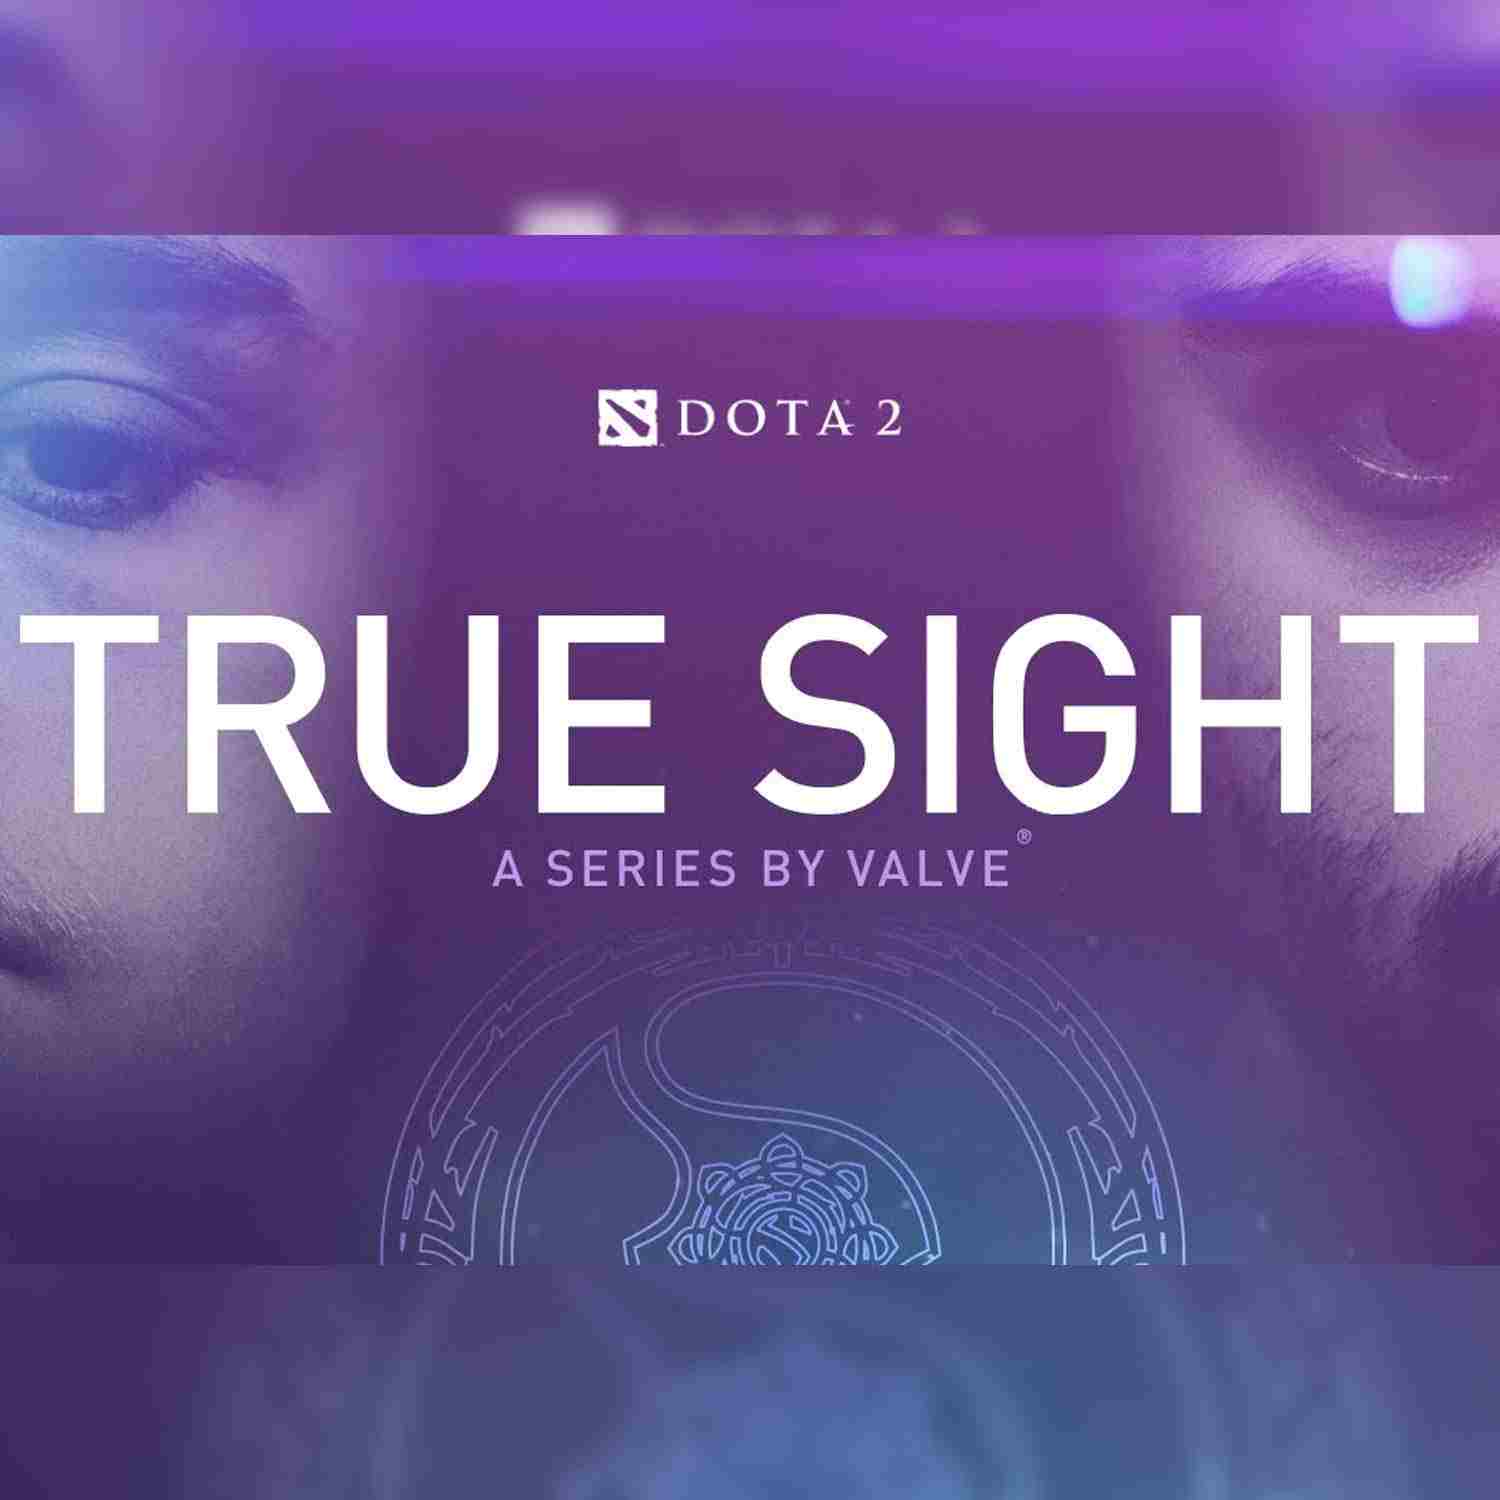 Valve publicará versiones actualizadas de los True Sight anteriores